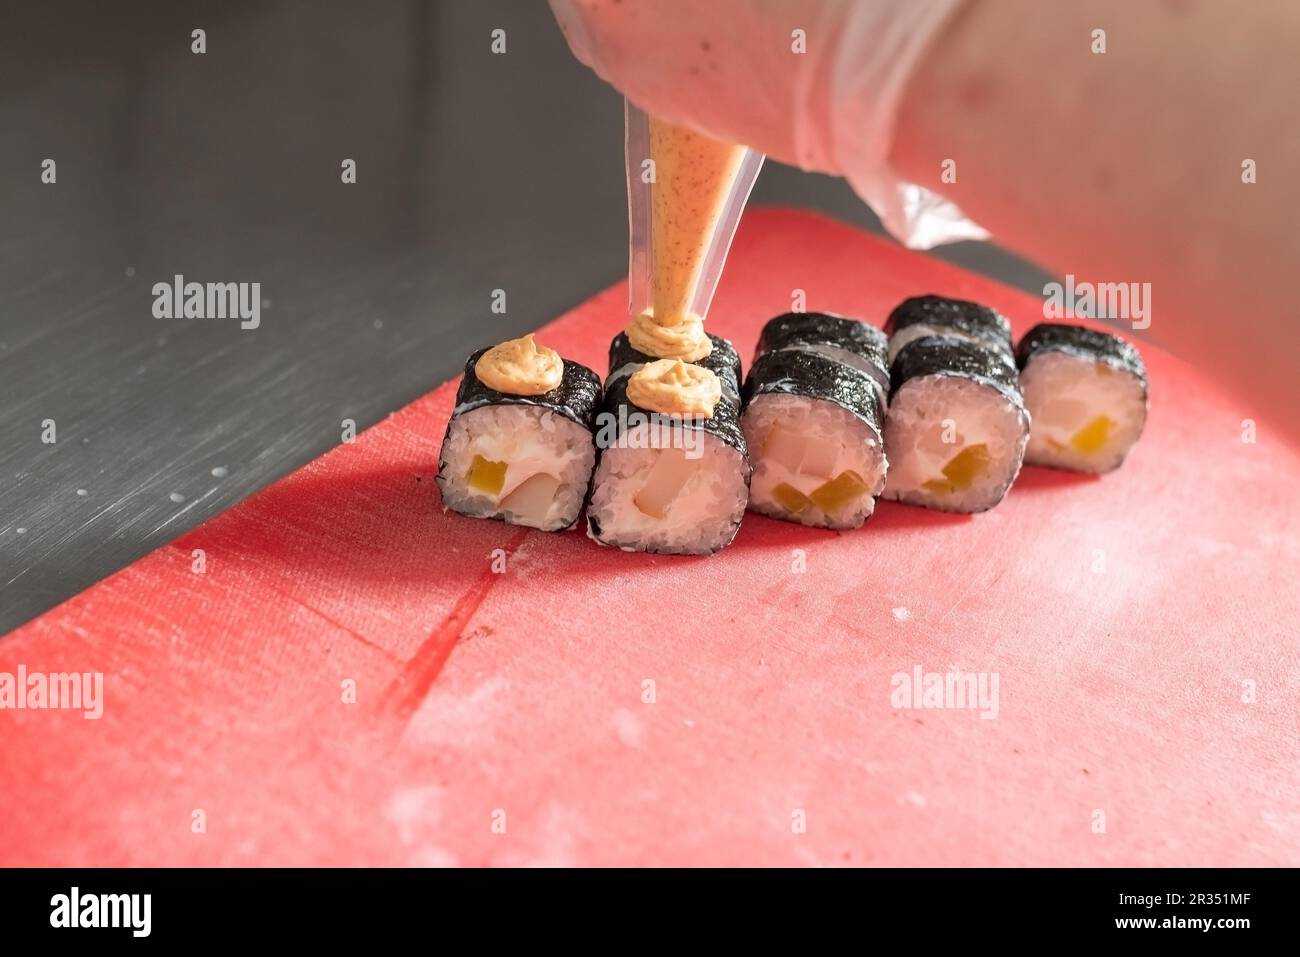 Application de la sauce épicée sur les sushis au fromage et au daikon. Photo de haute qualité Banque D'Images